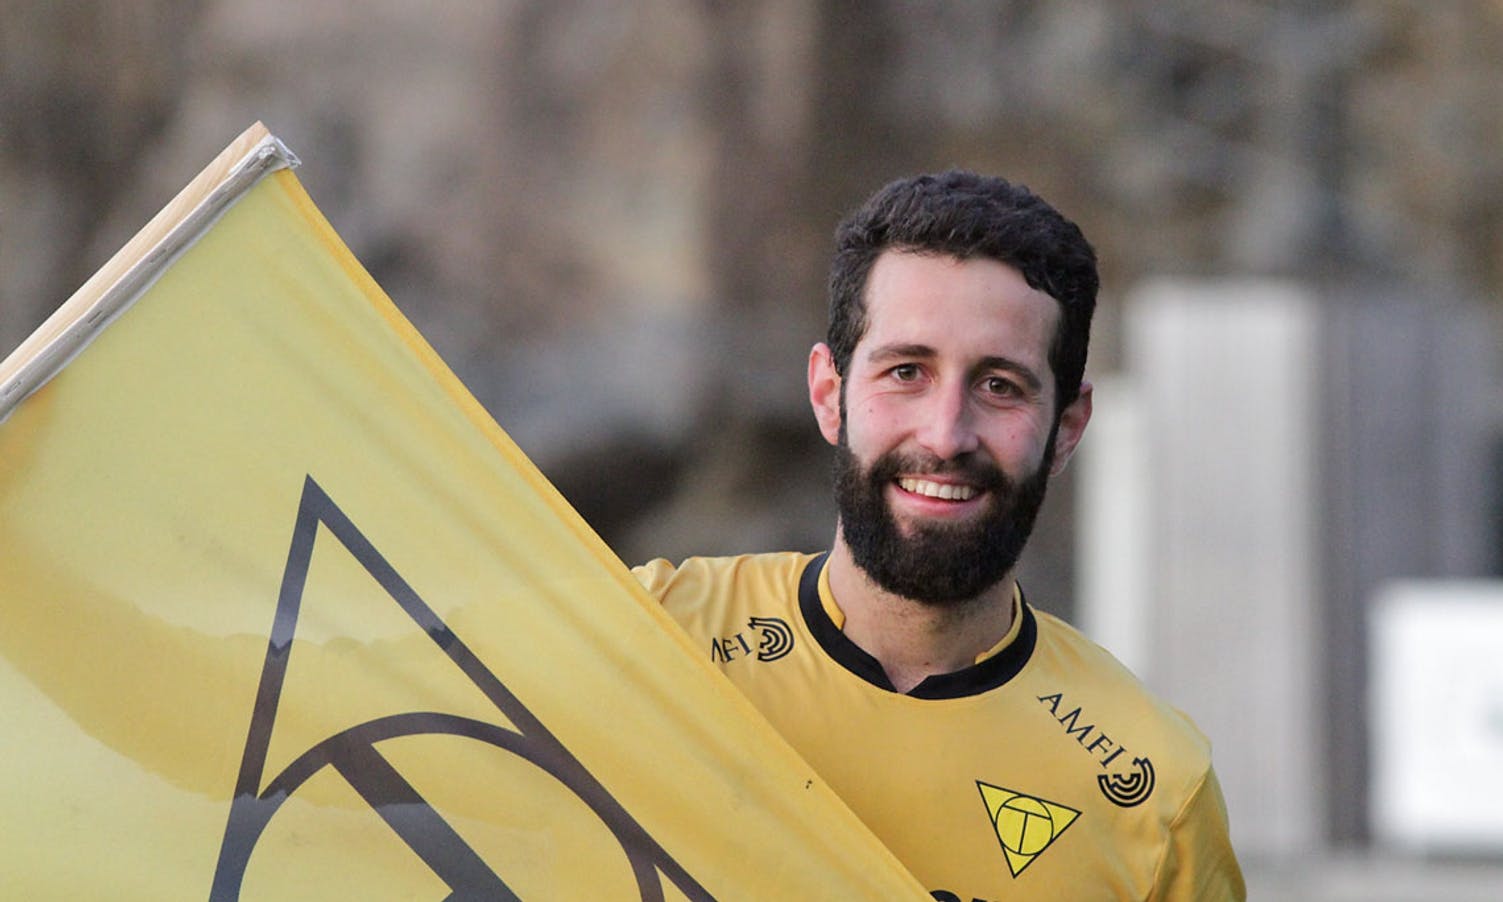 Spanske Rafael Villén er glad i det gule flagget. (Foto: KVB)